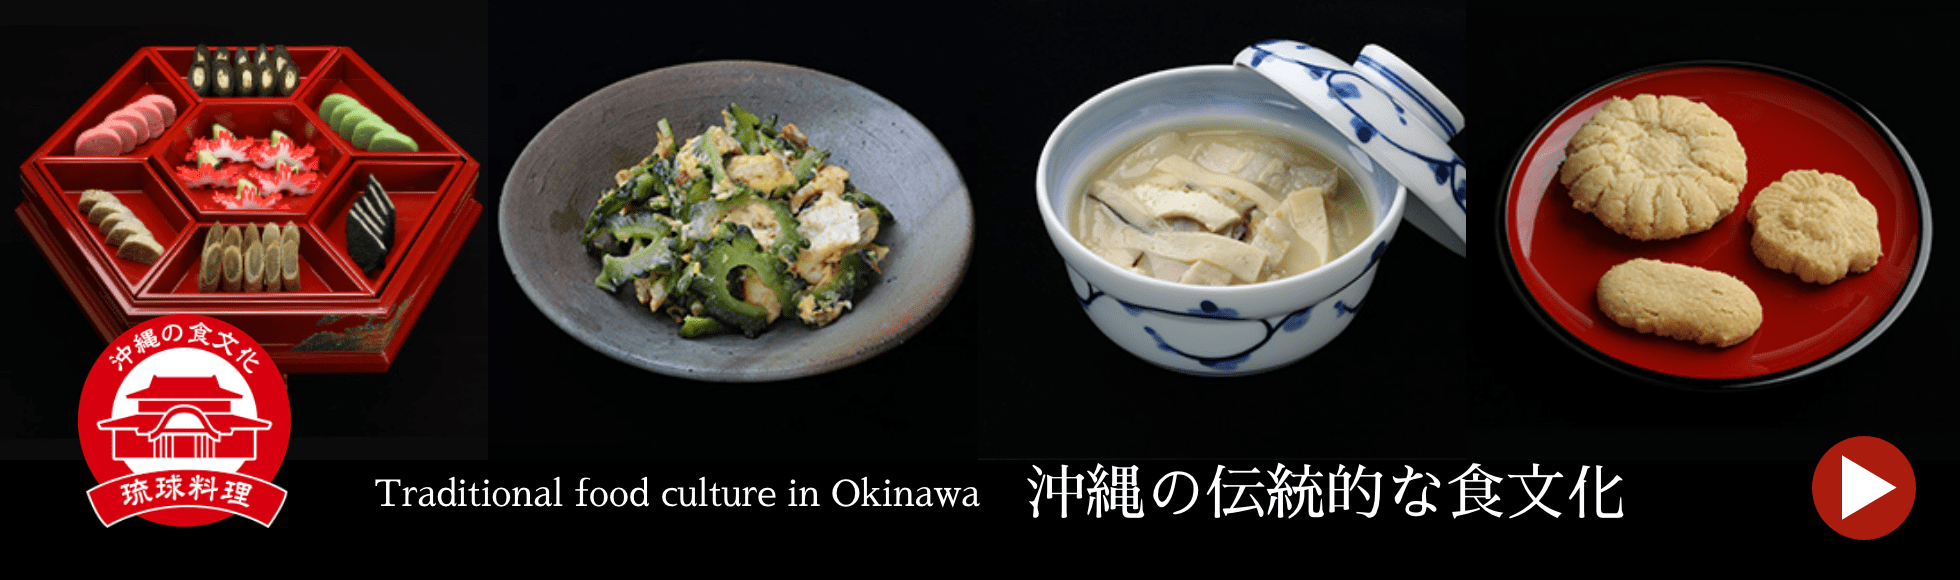 沖縄の伝統的な食文化→